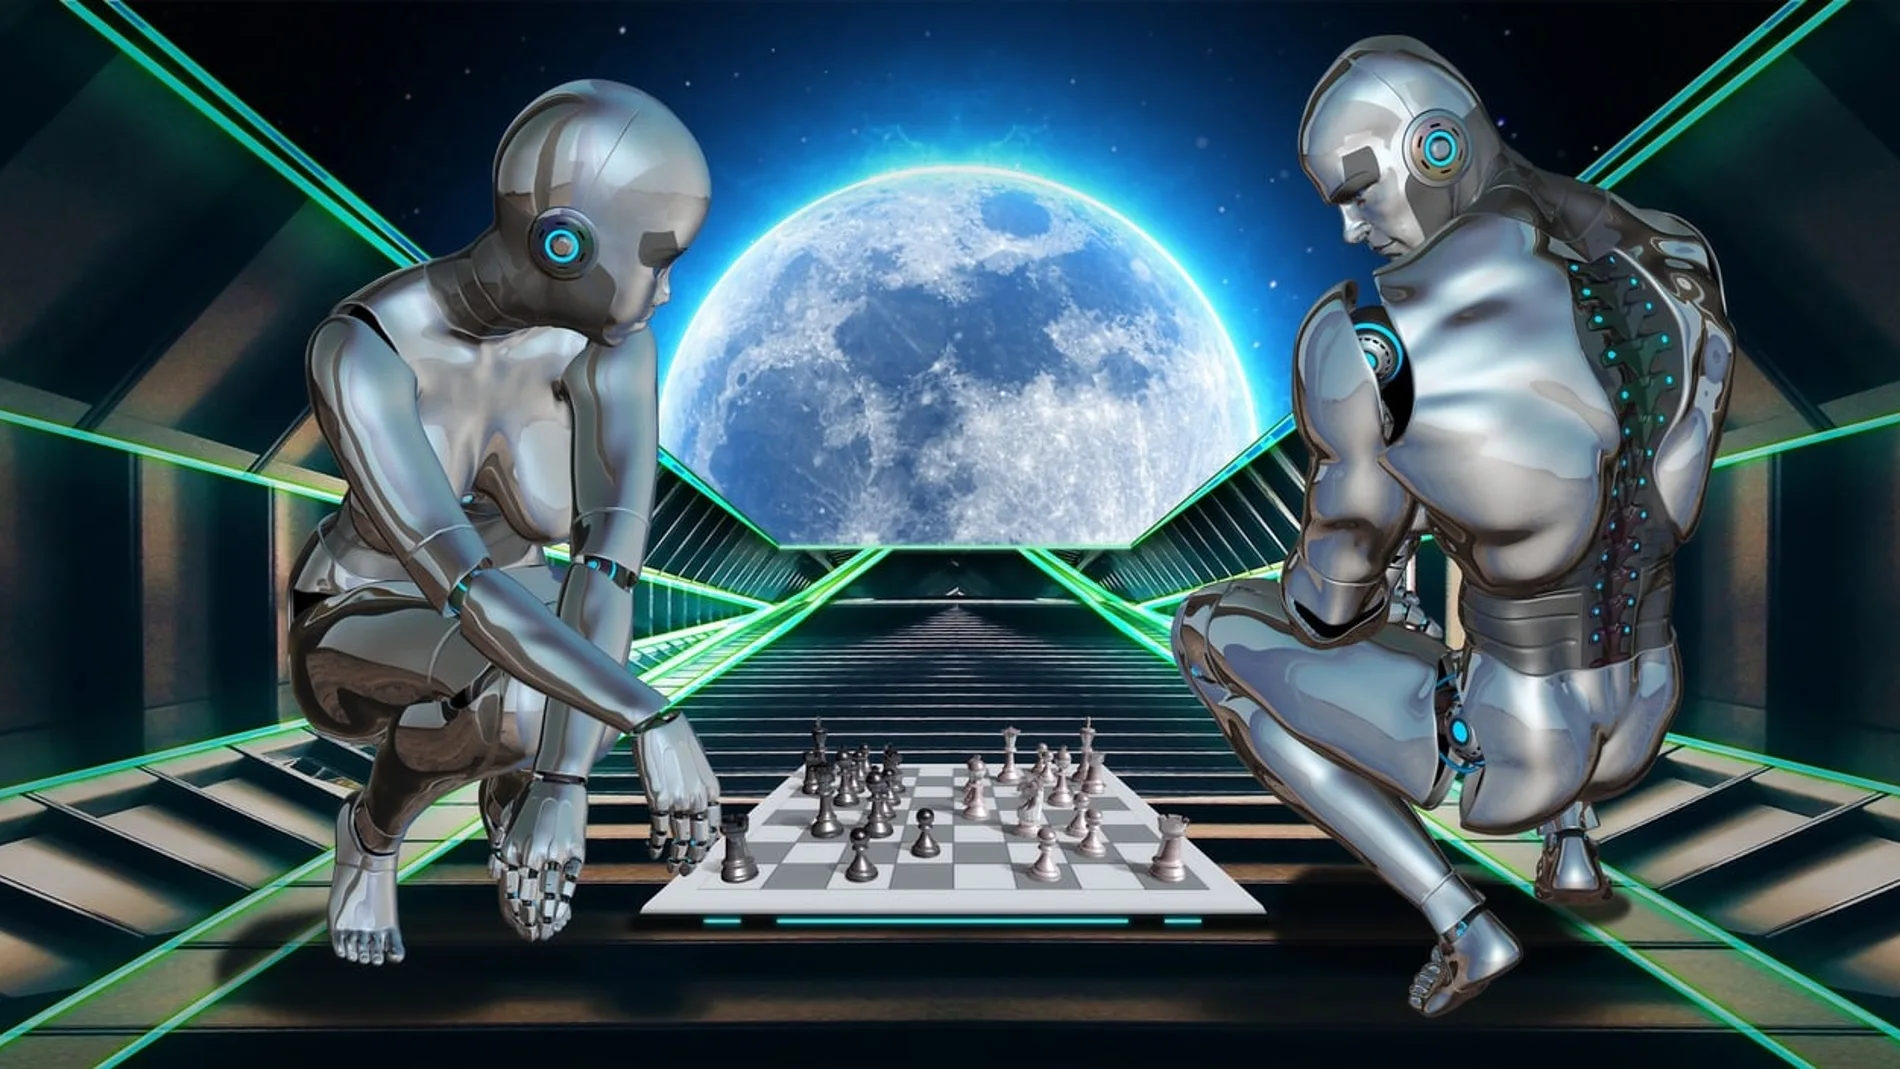 Dos cyborgs juegan al ajedrez en un escenario futurista